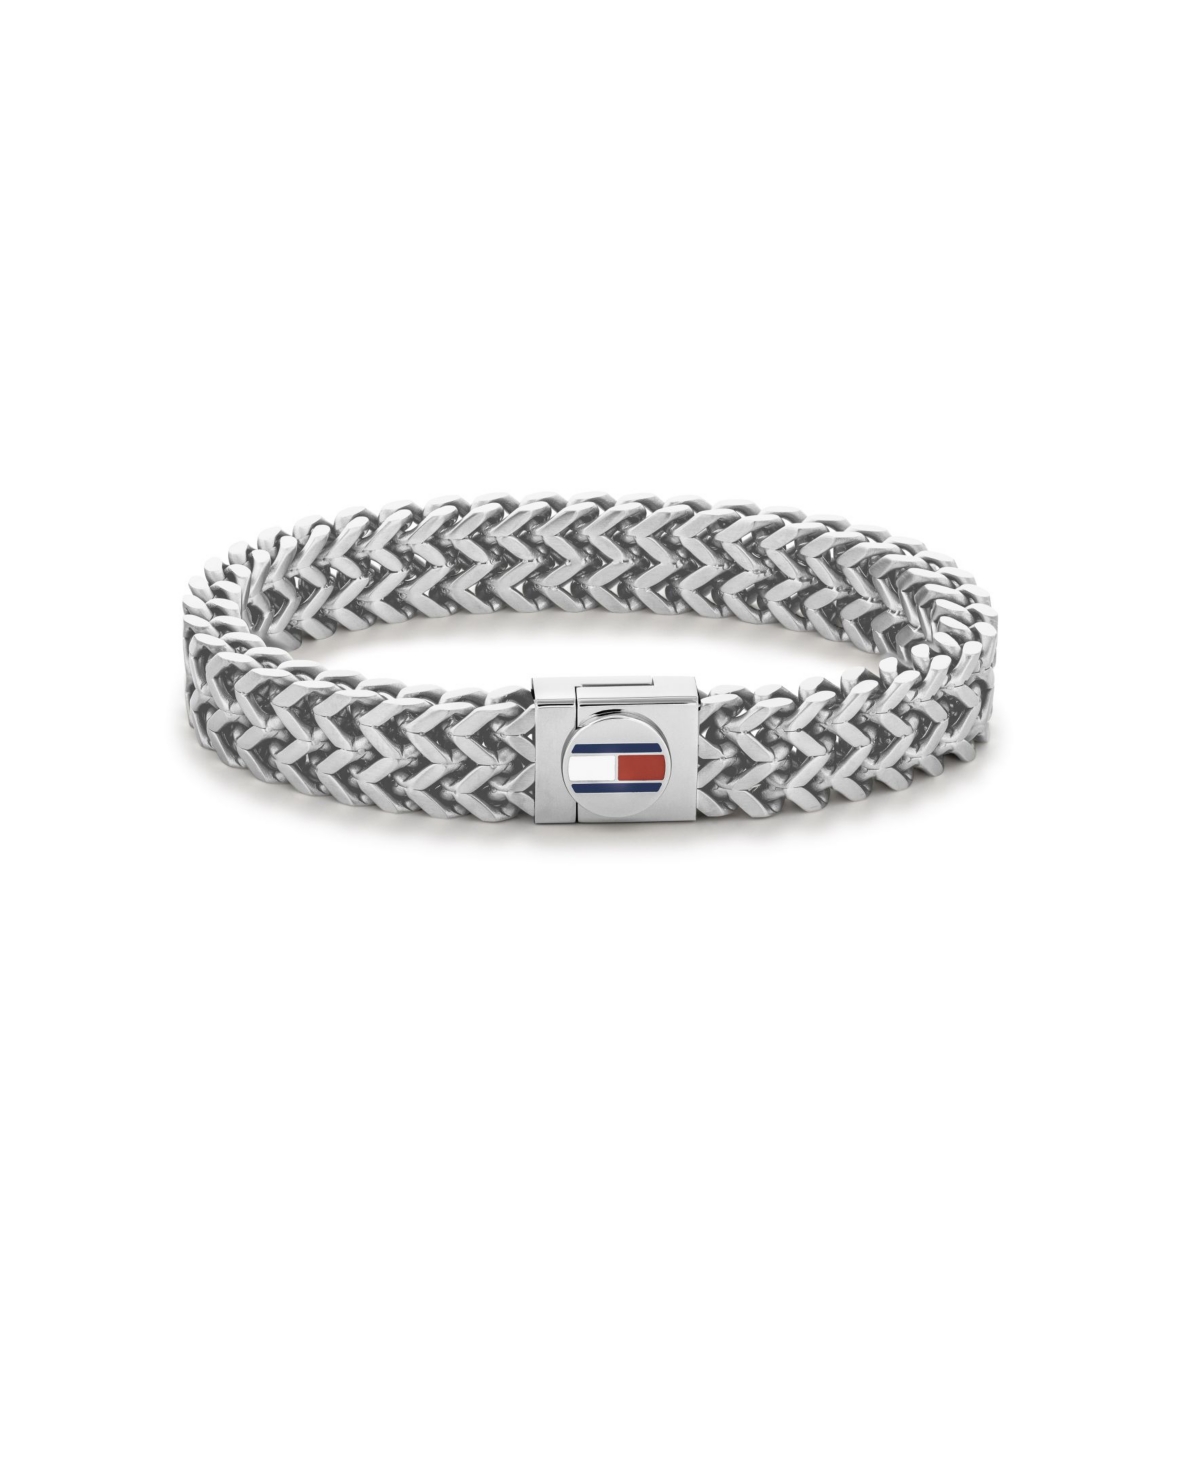 Men's Braided Stainless Steel Bracelet - Silver